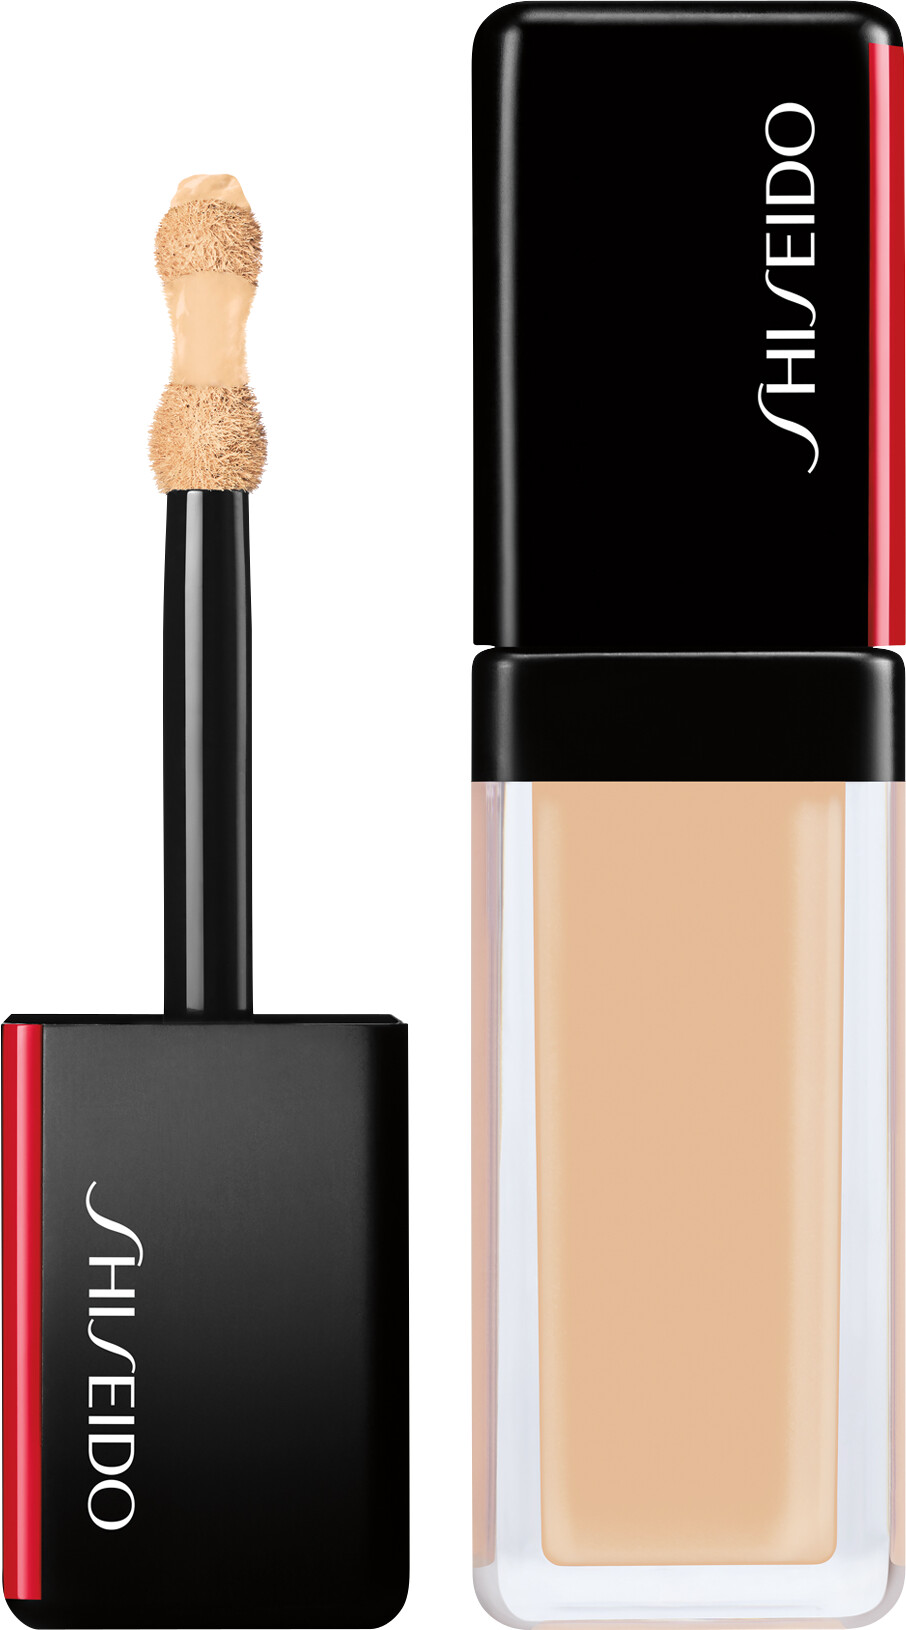 Shiseido Synchro Skin Self-Refreshing Concealer 5.8ml 202 - Light